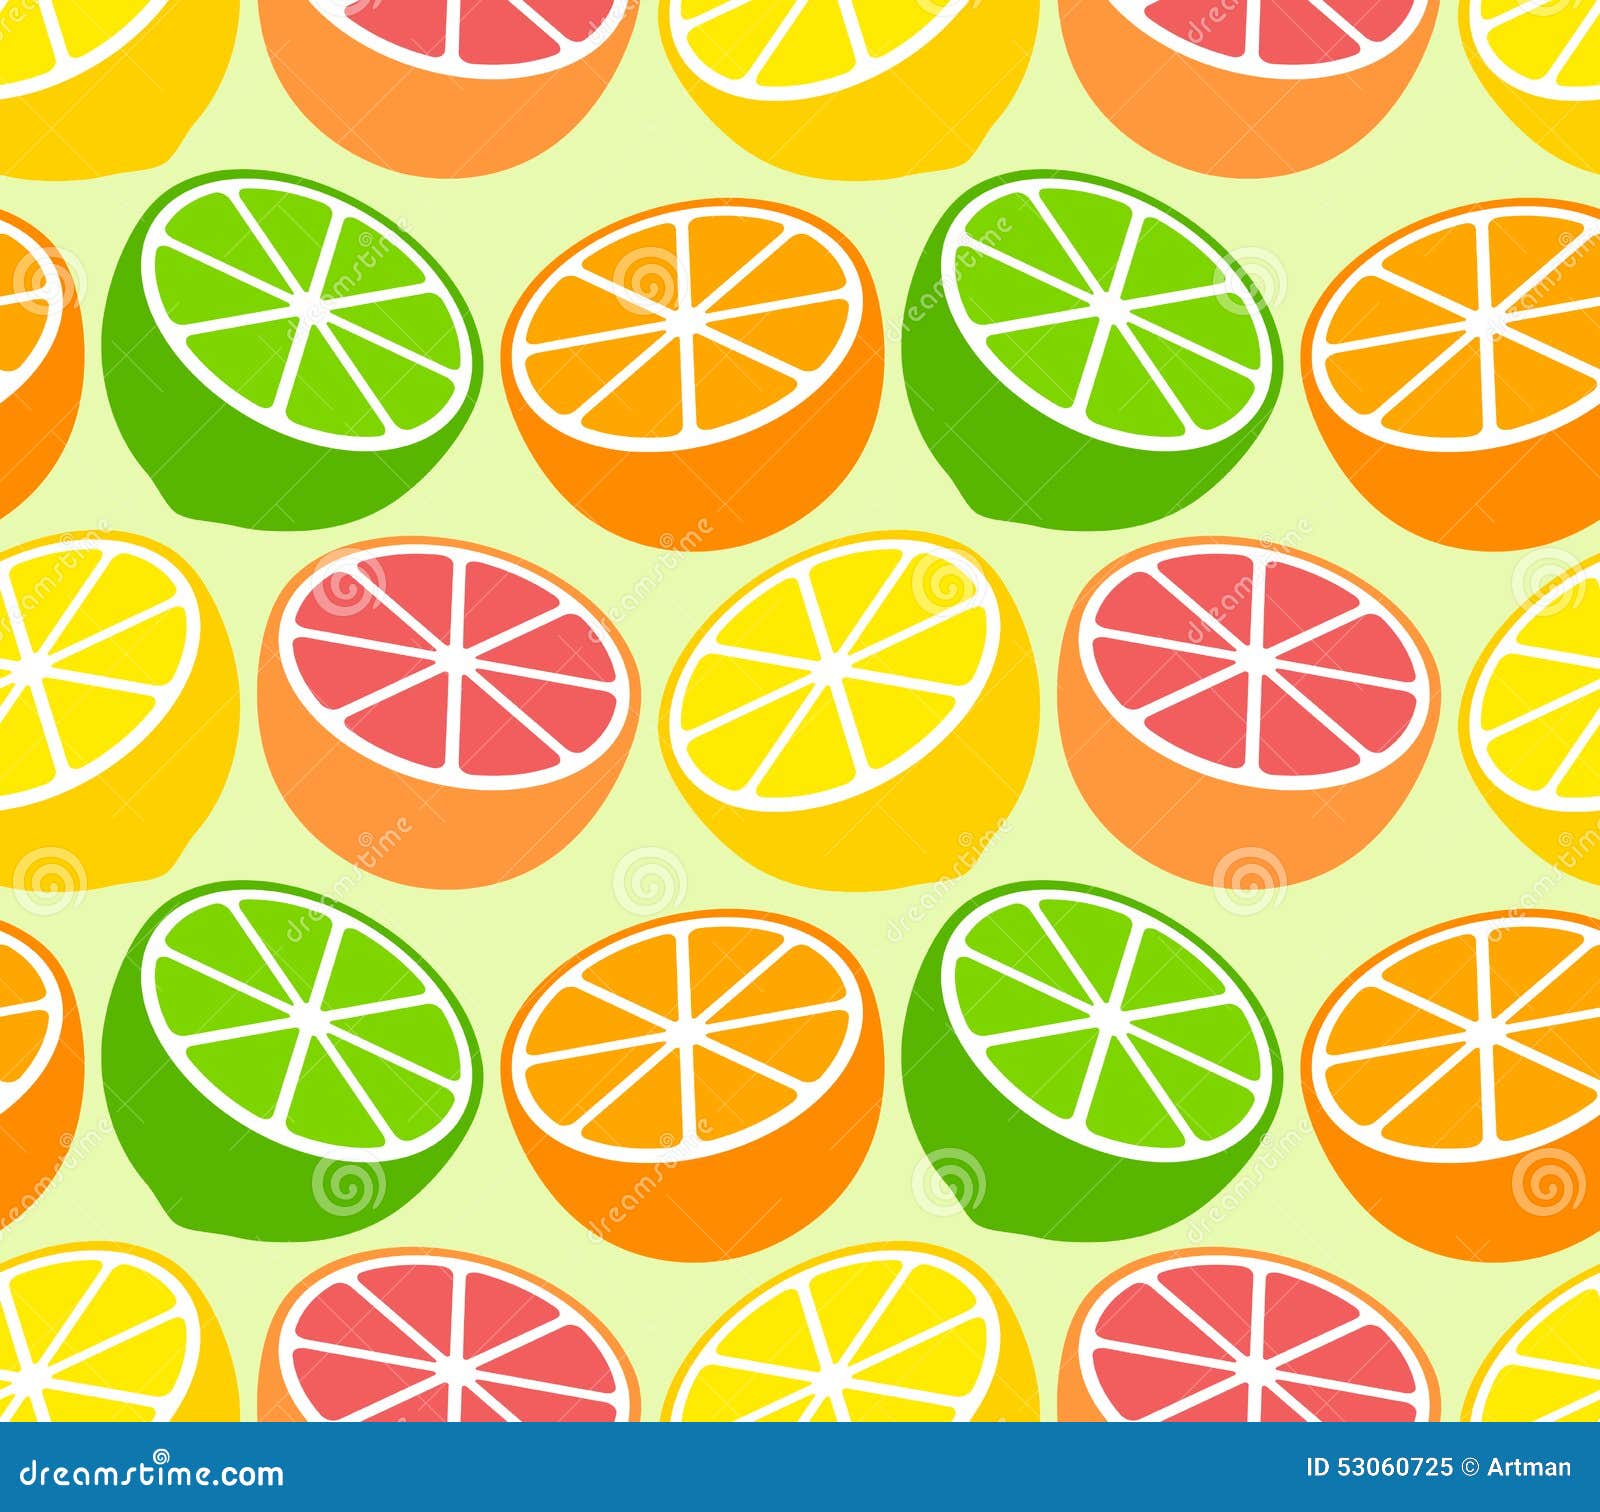 clipart citrus fruits - photo #42